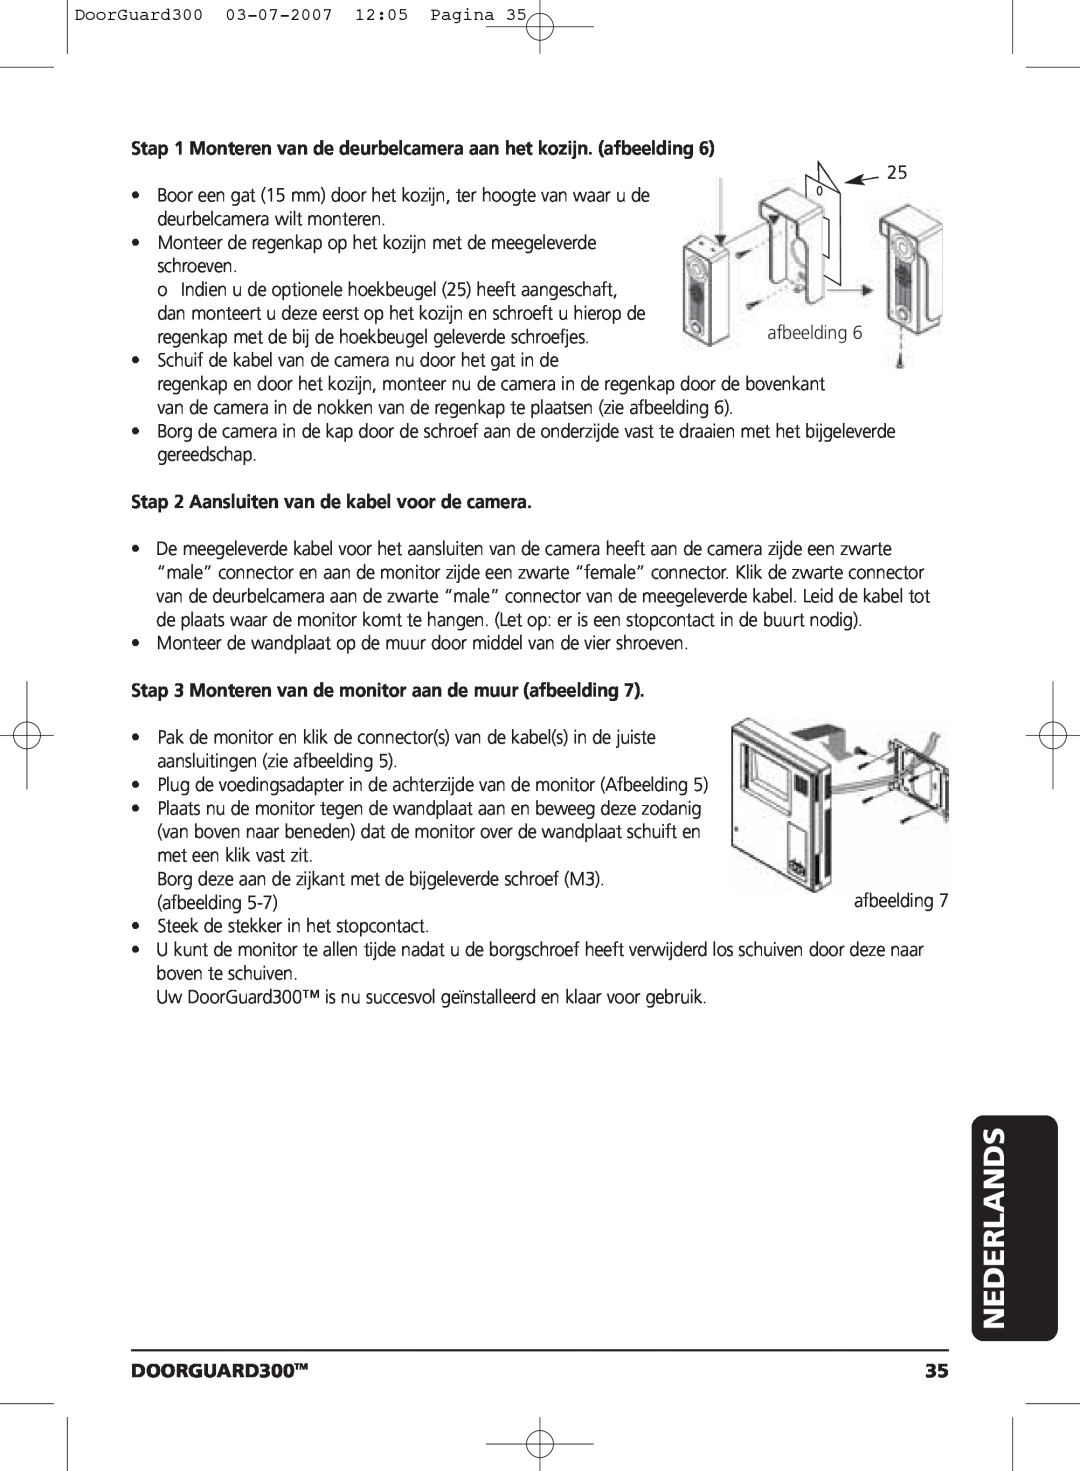 Marmitek DOORGUARD300TM user manual Stap 1 Monteren van de deurbelcamera aan het kozijn. afbeelding, Nederlands 